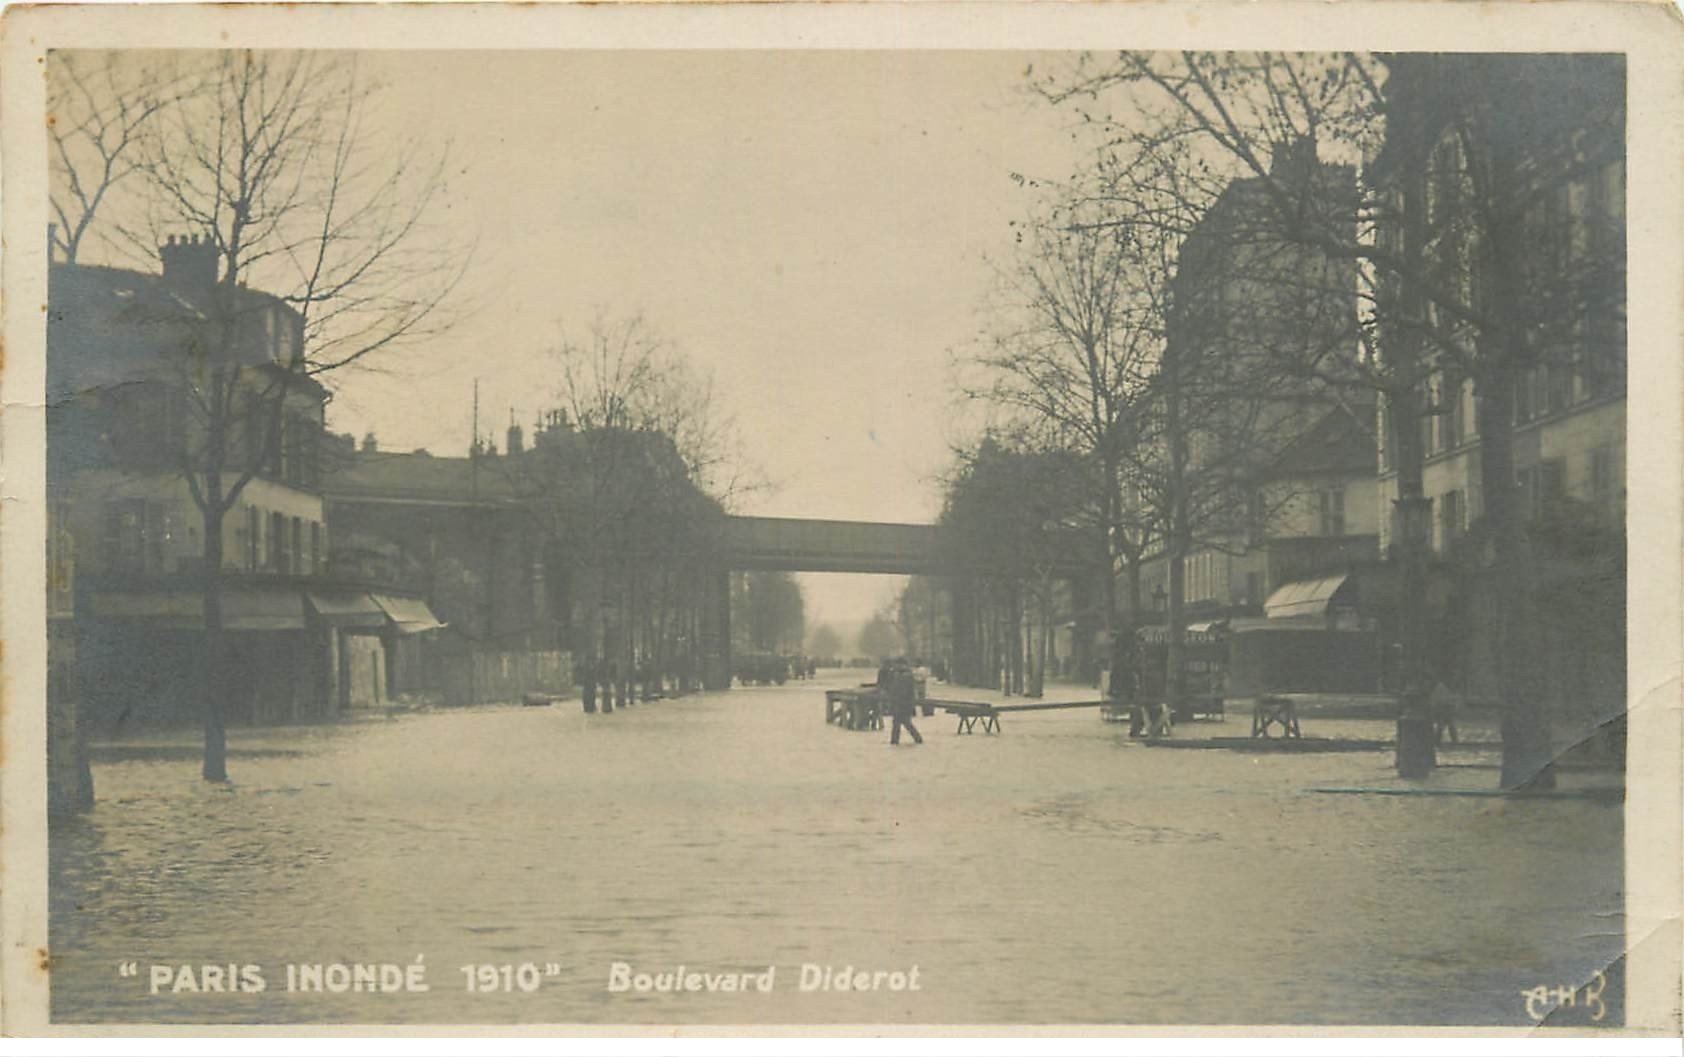 INONDATION ET CRUE PARIS 1910. Boulevard Diderot